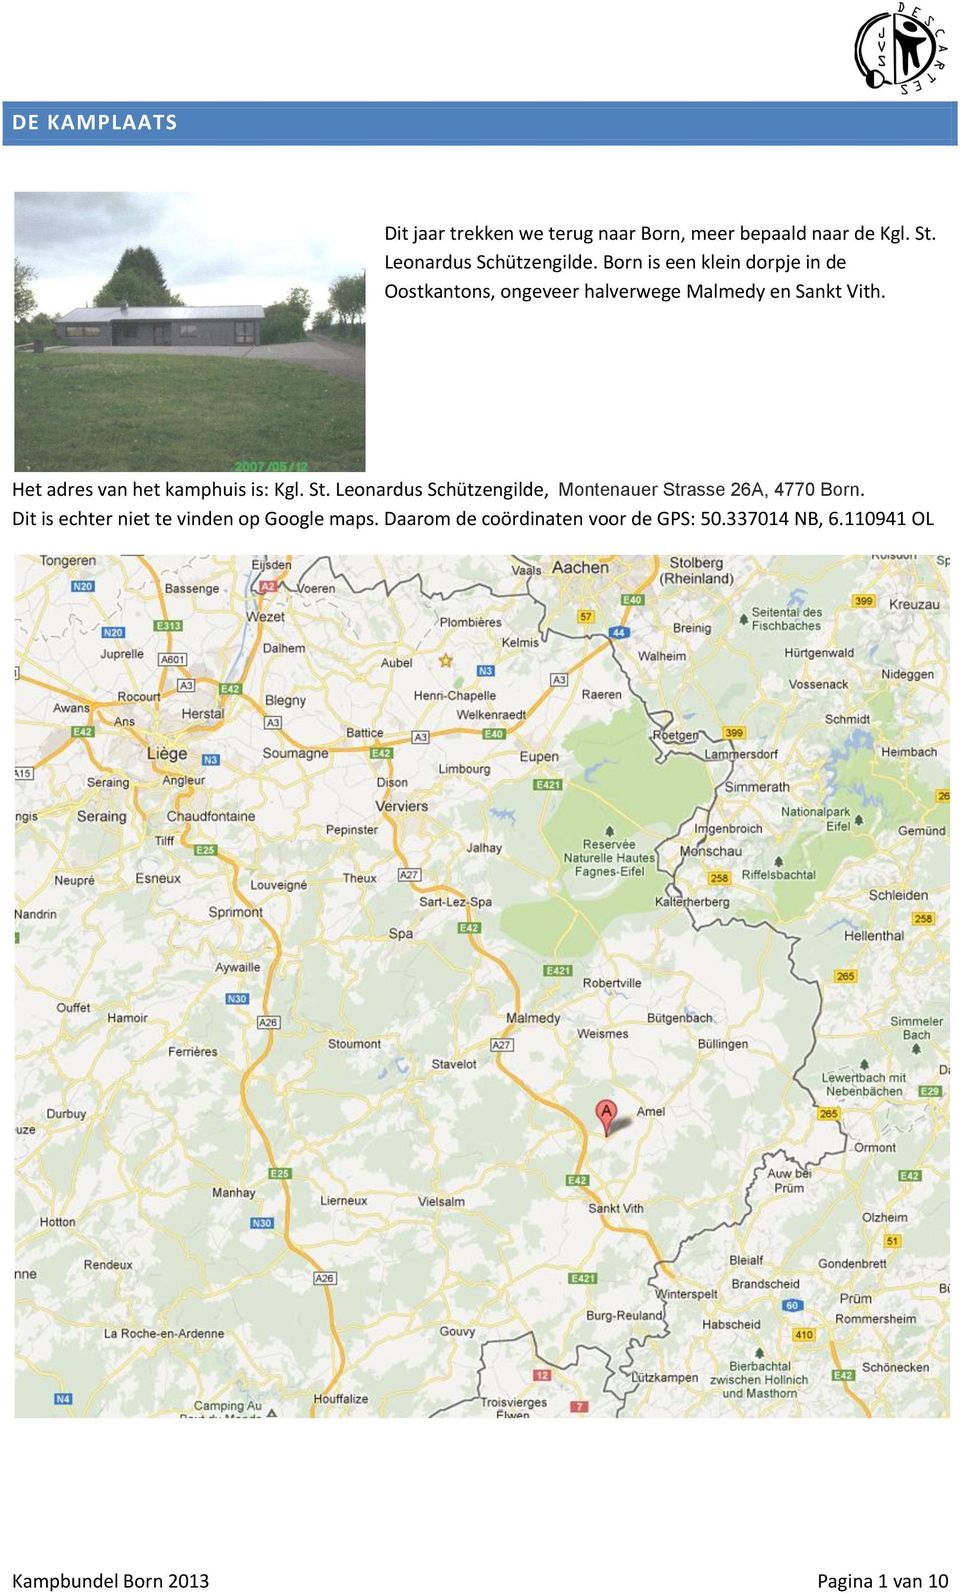 Het adres van het kamphuis is: Kgl. St. Leonardus Schützengilde, Montenauer Strasse 26A, 4770 Born.